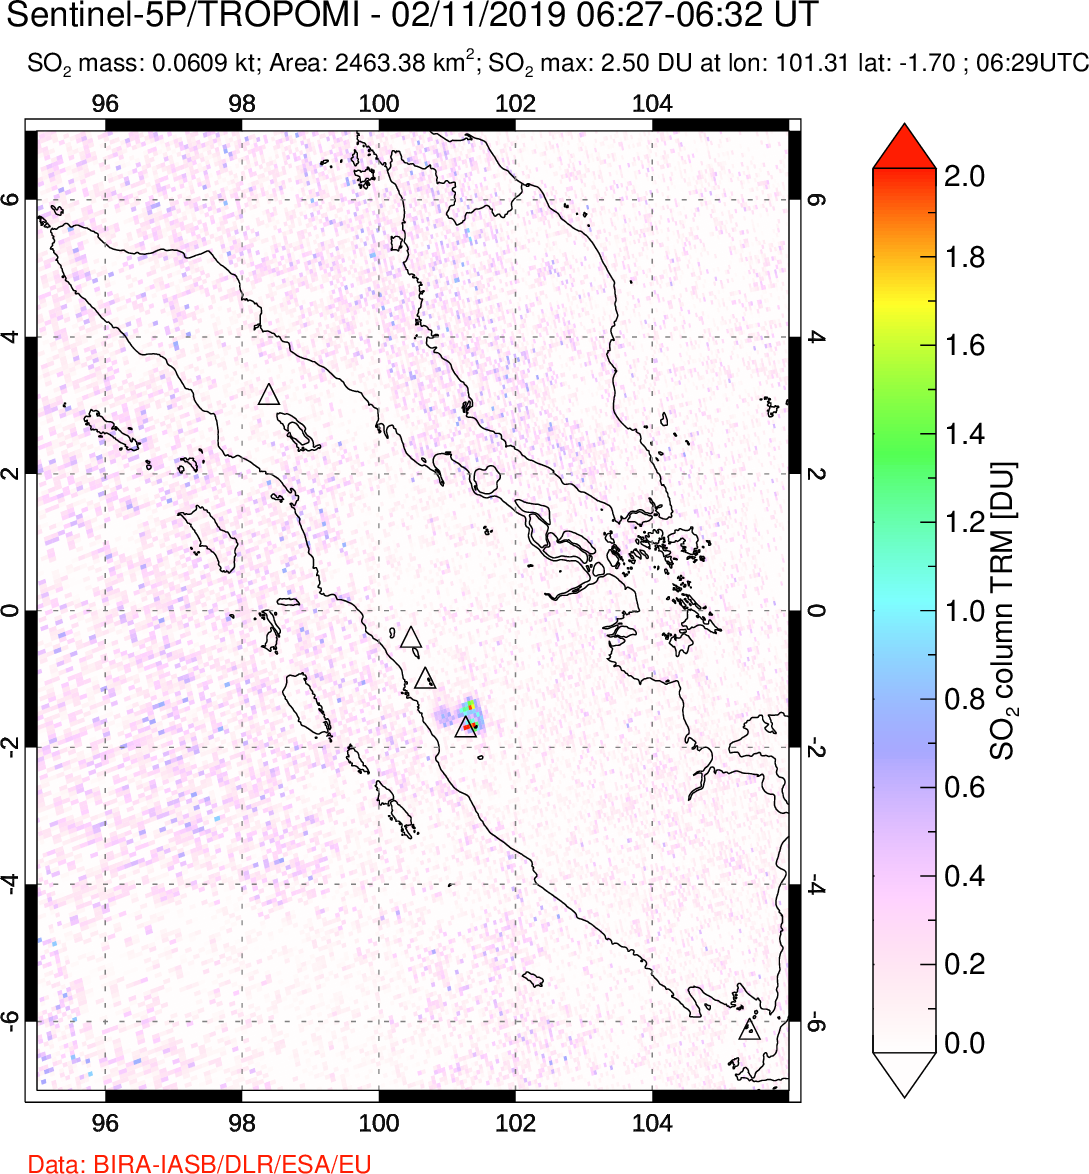 A sulfur dioxide image over Sumatra, Indonesia on Feb 11, 2019.